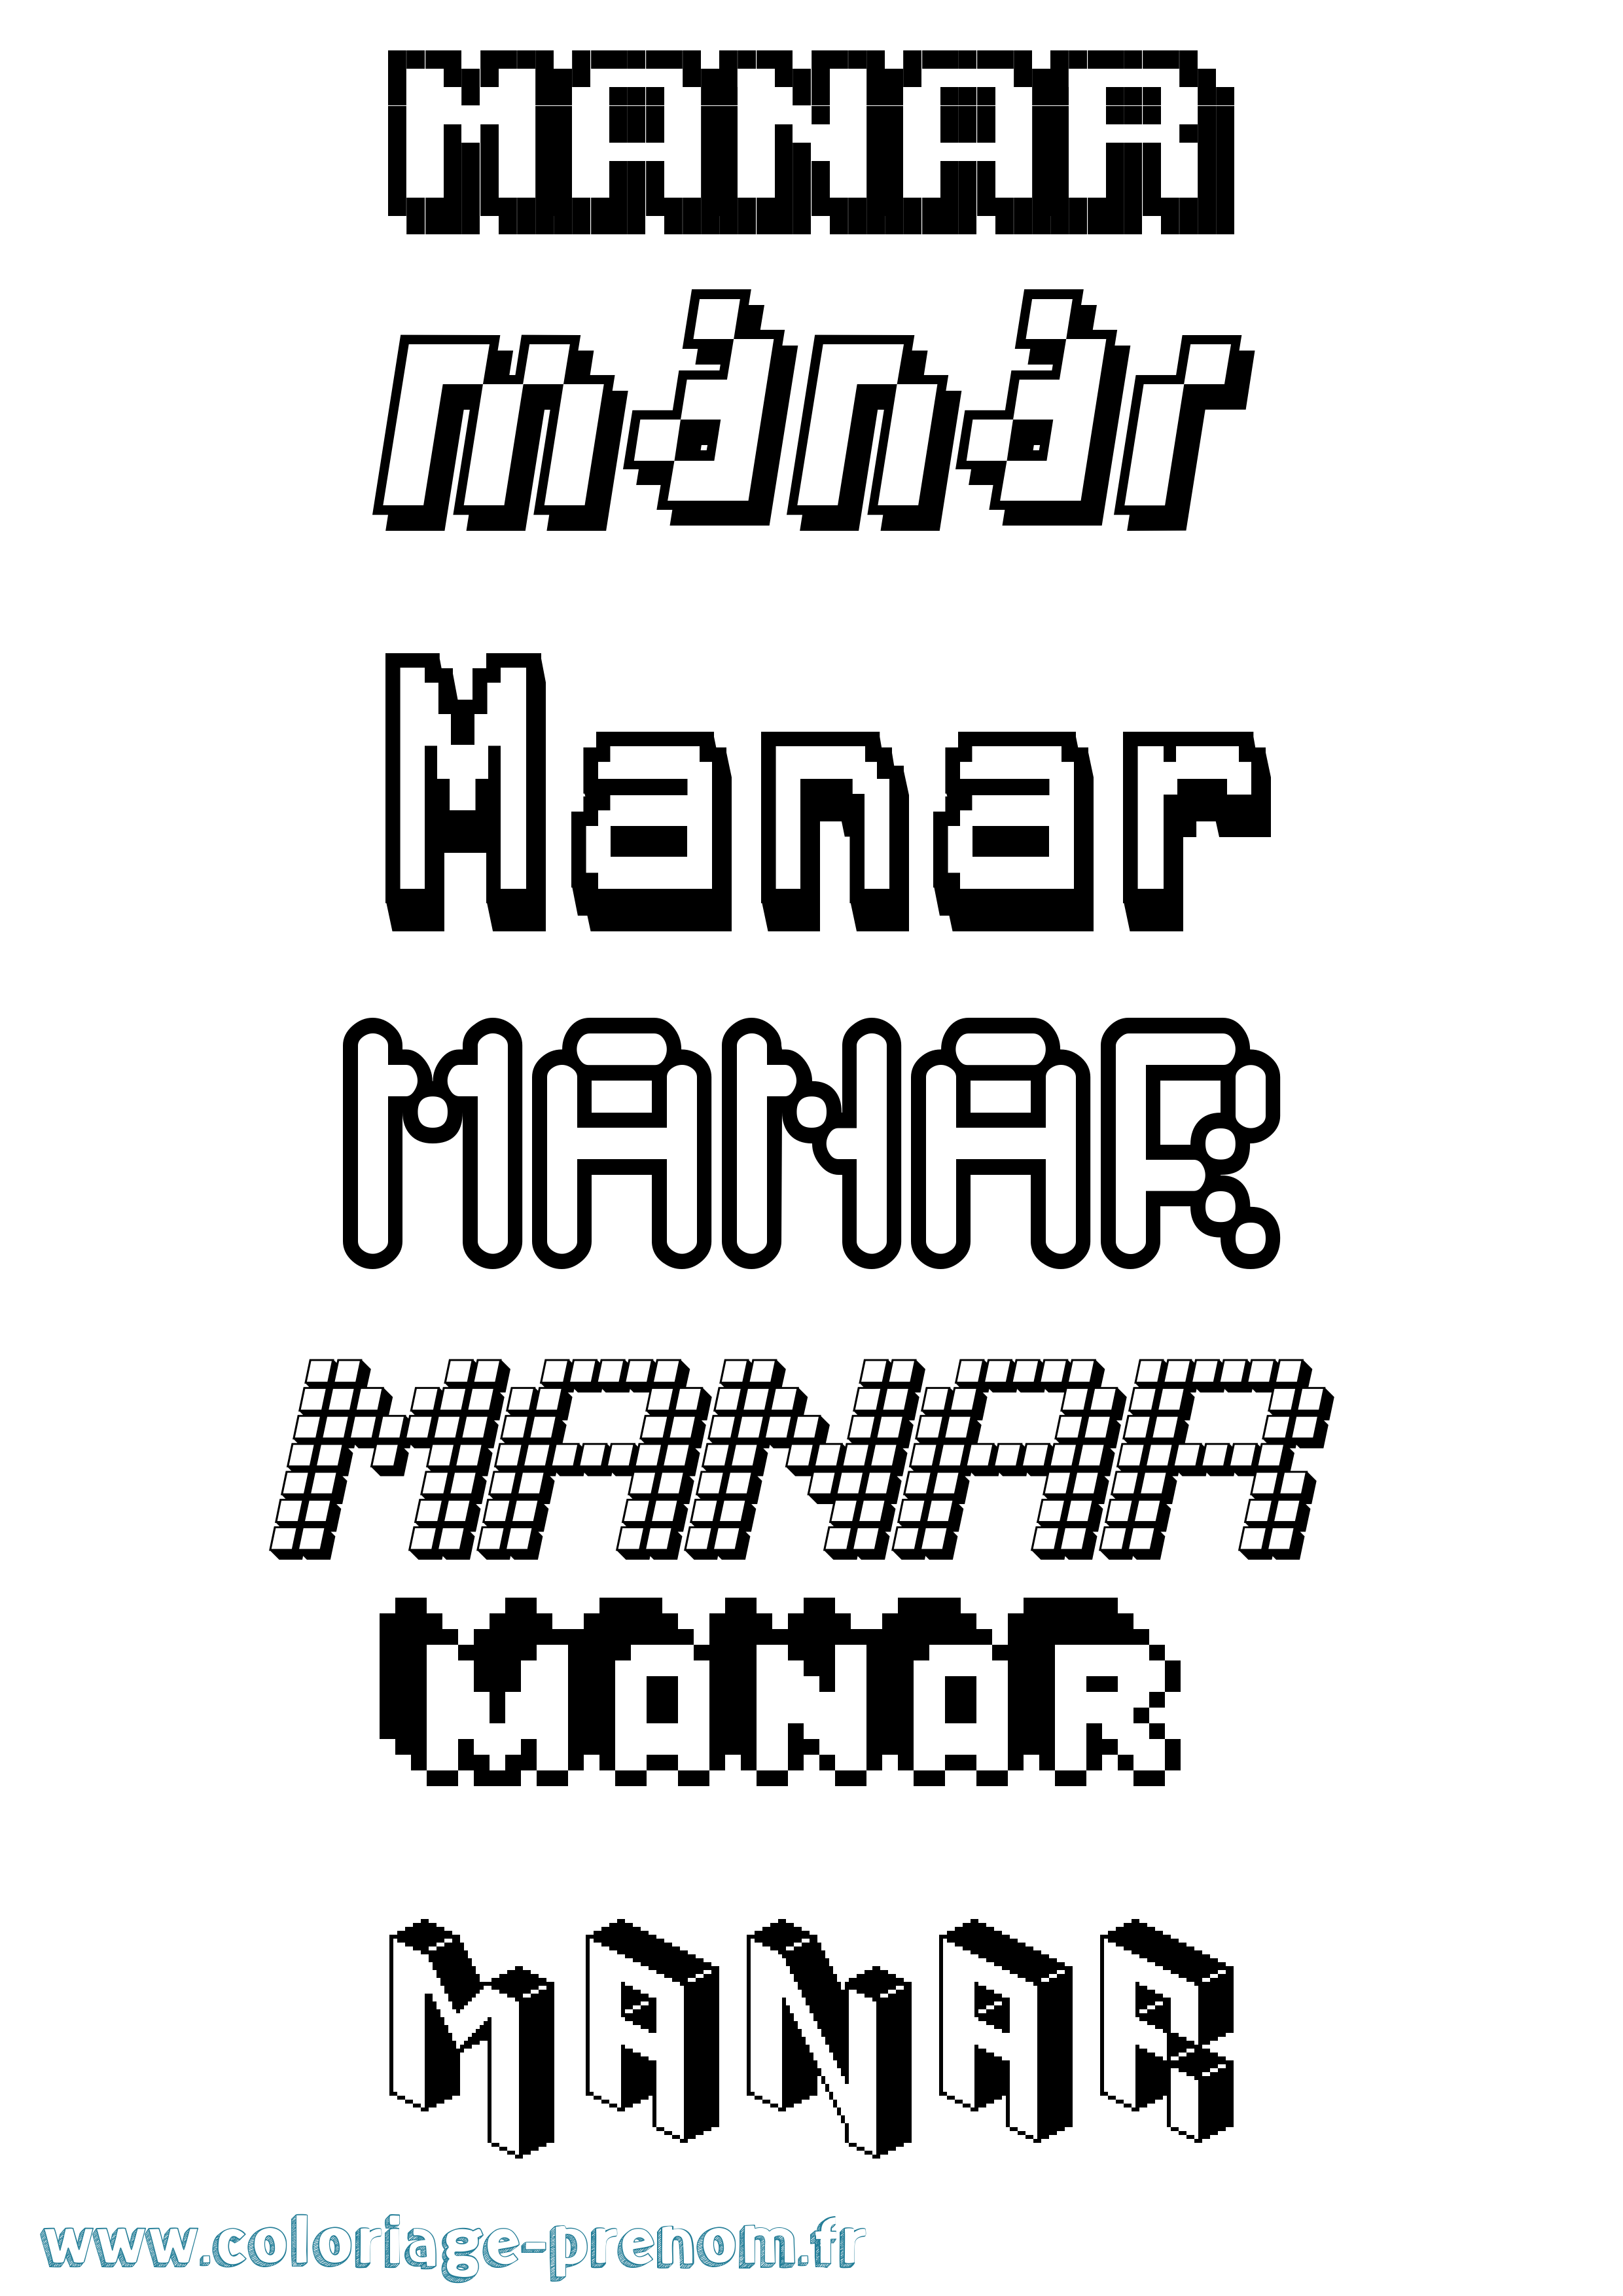 Coloriage prénom Manar